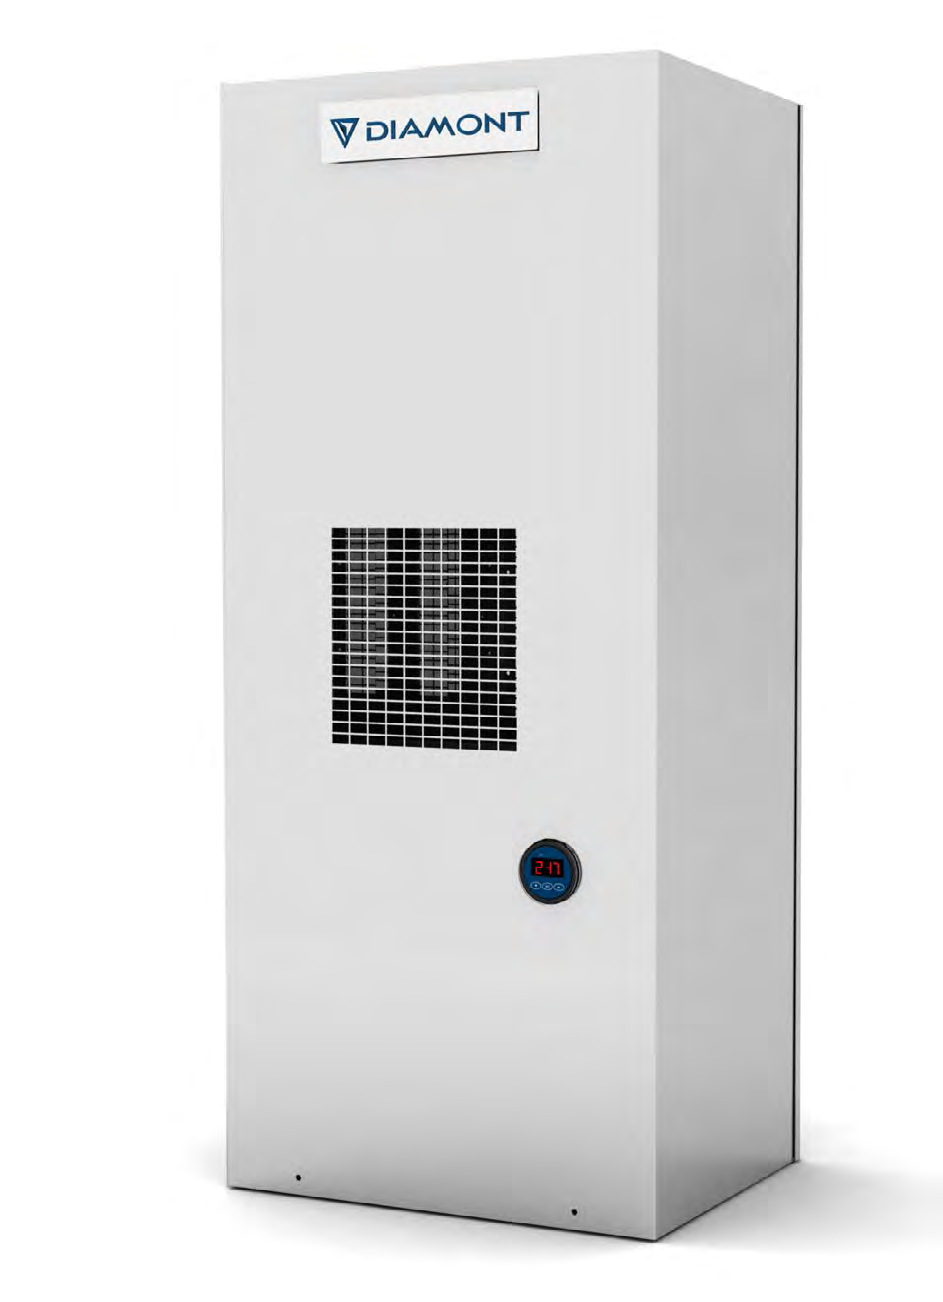 6.7. HCP 300 O condicionador de painel de 3000 W da Linha HERA tem o objetivo de atender aplicações de pequeno porte.